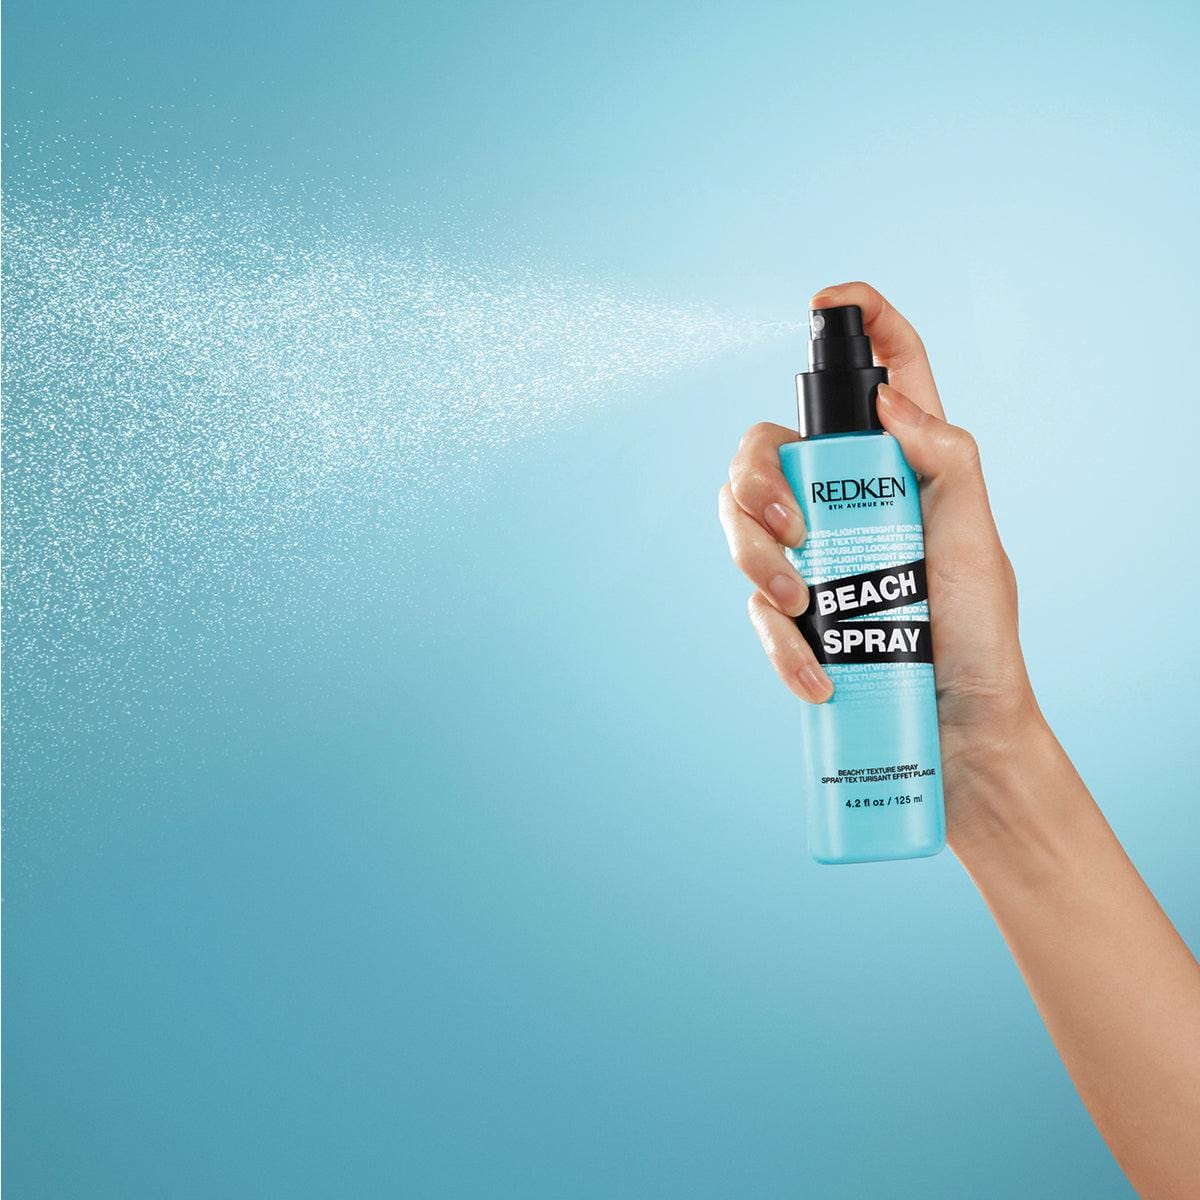 REDKEN_Beach Spray Beachy Texture Spray 125ml / 4.2oz_Cosmetic World